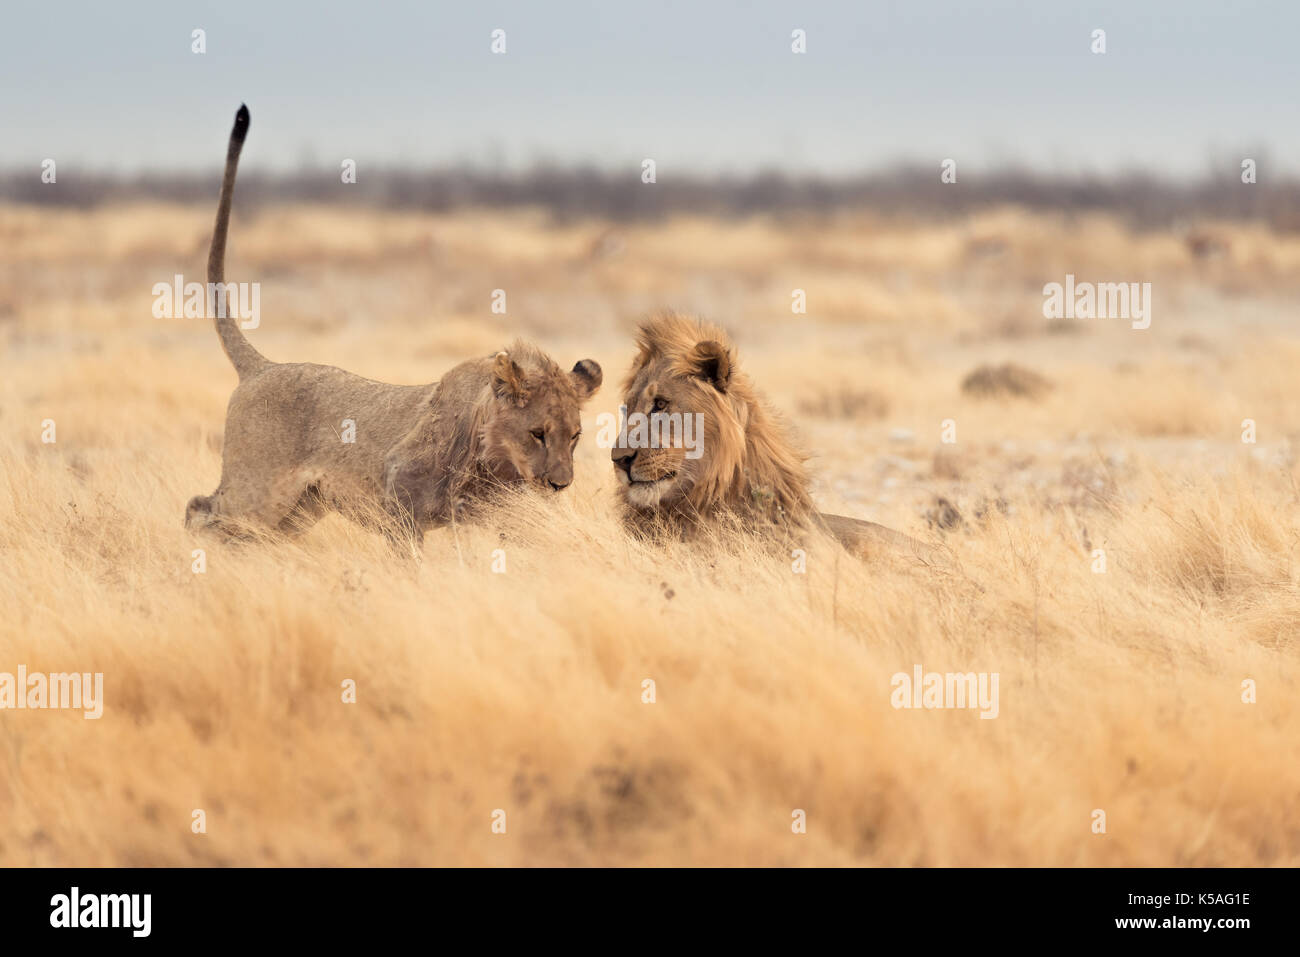 Lions Banque D'Images